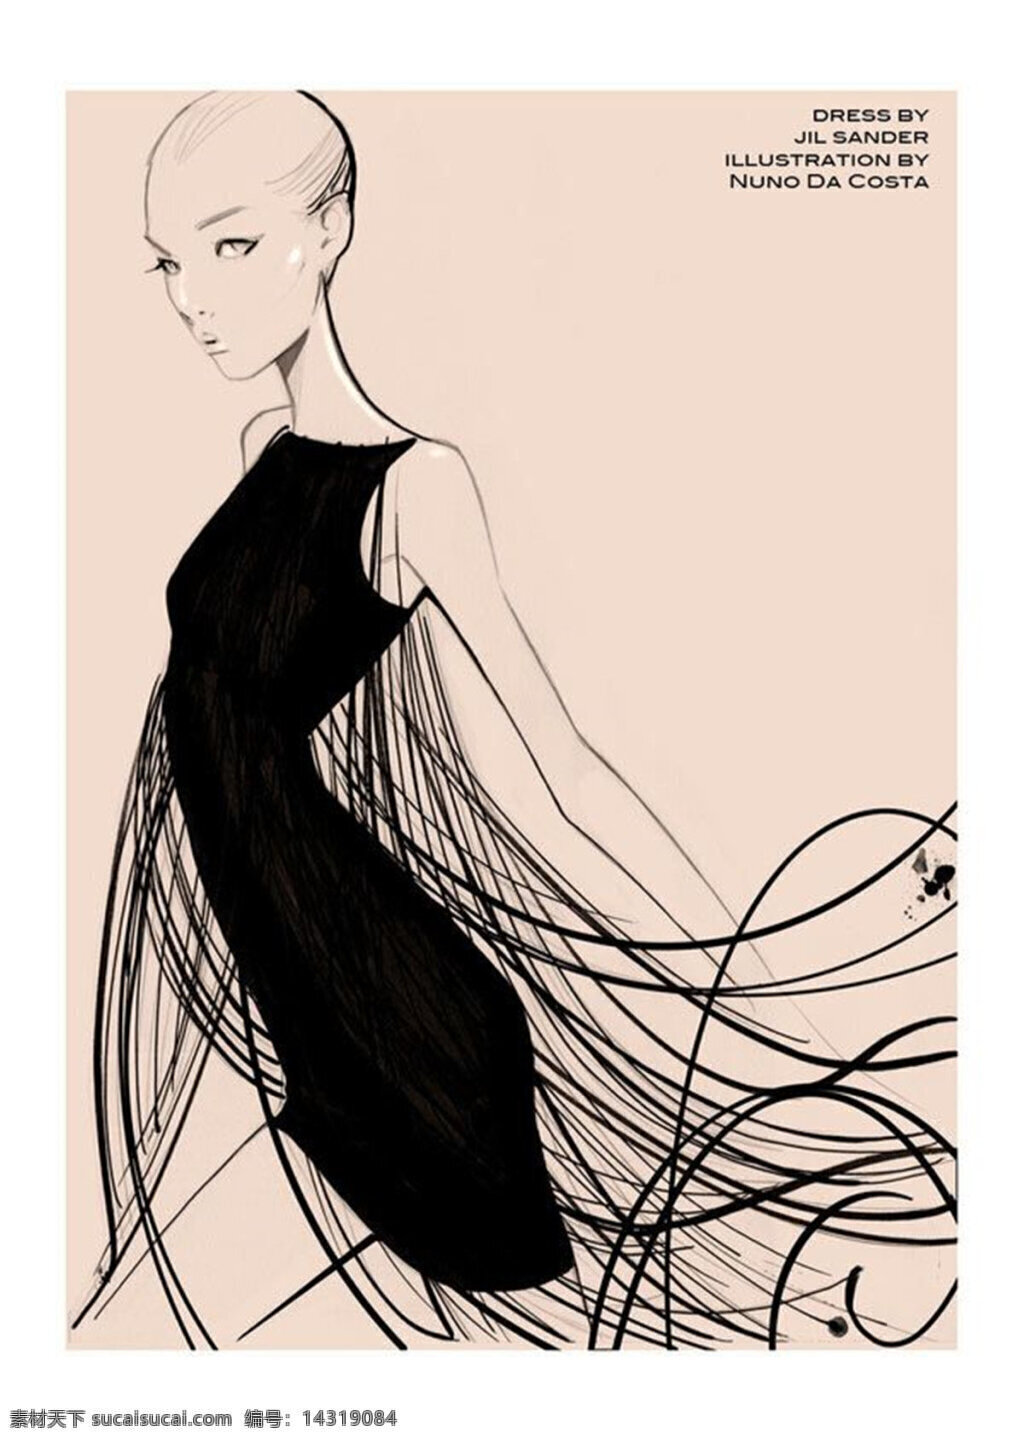 黑色 连衣裙 设计图 服装设计 时尚女装 职业女装 职业装 女装设计 效果图 短裙 衬衫 服装 服装效果图